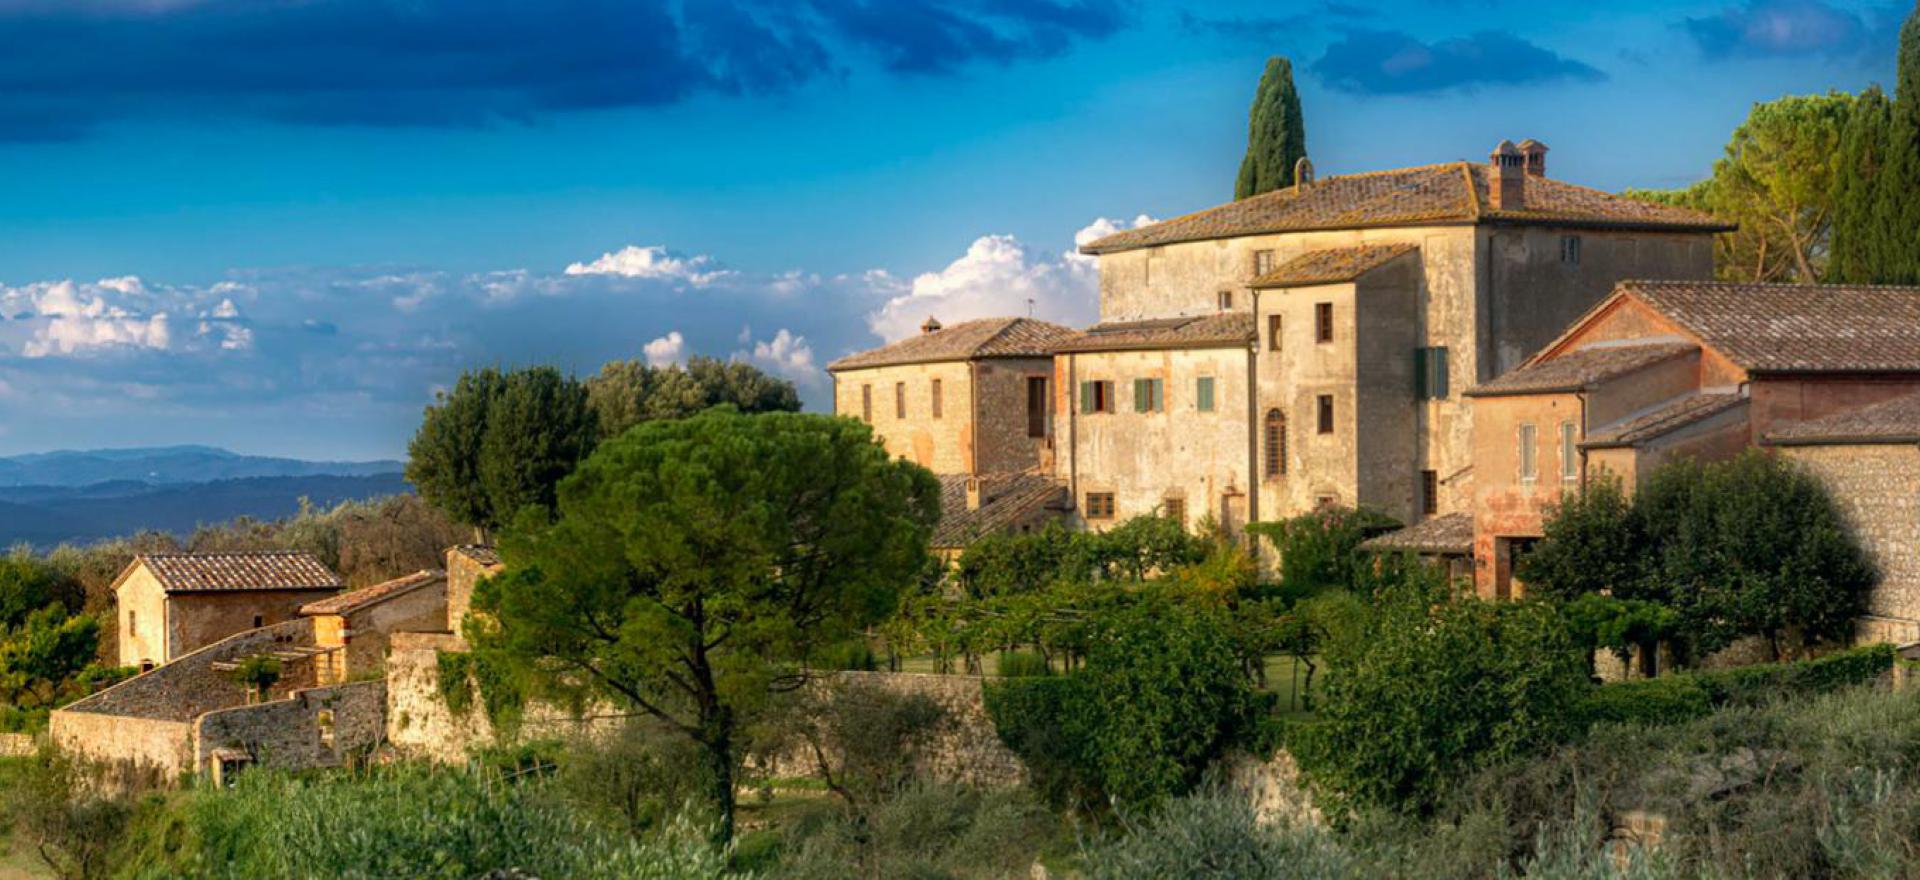 Agriturismo Toskana Geheimtipp in der Toskana in der Nähe von Siena